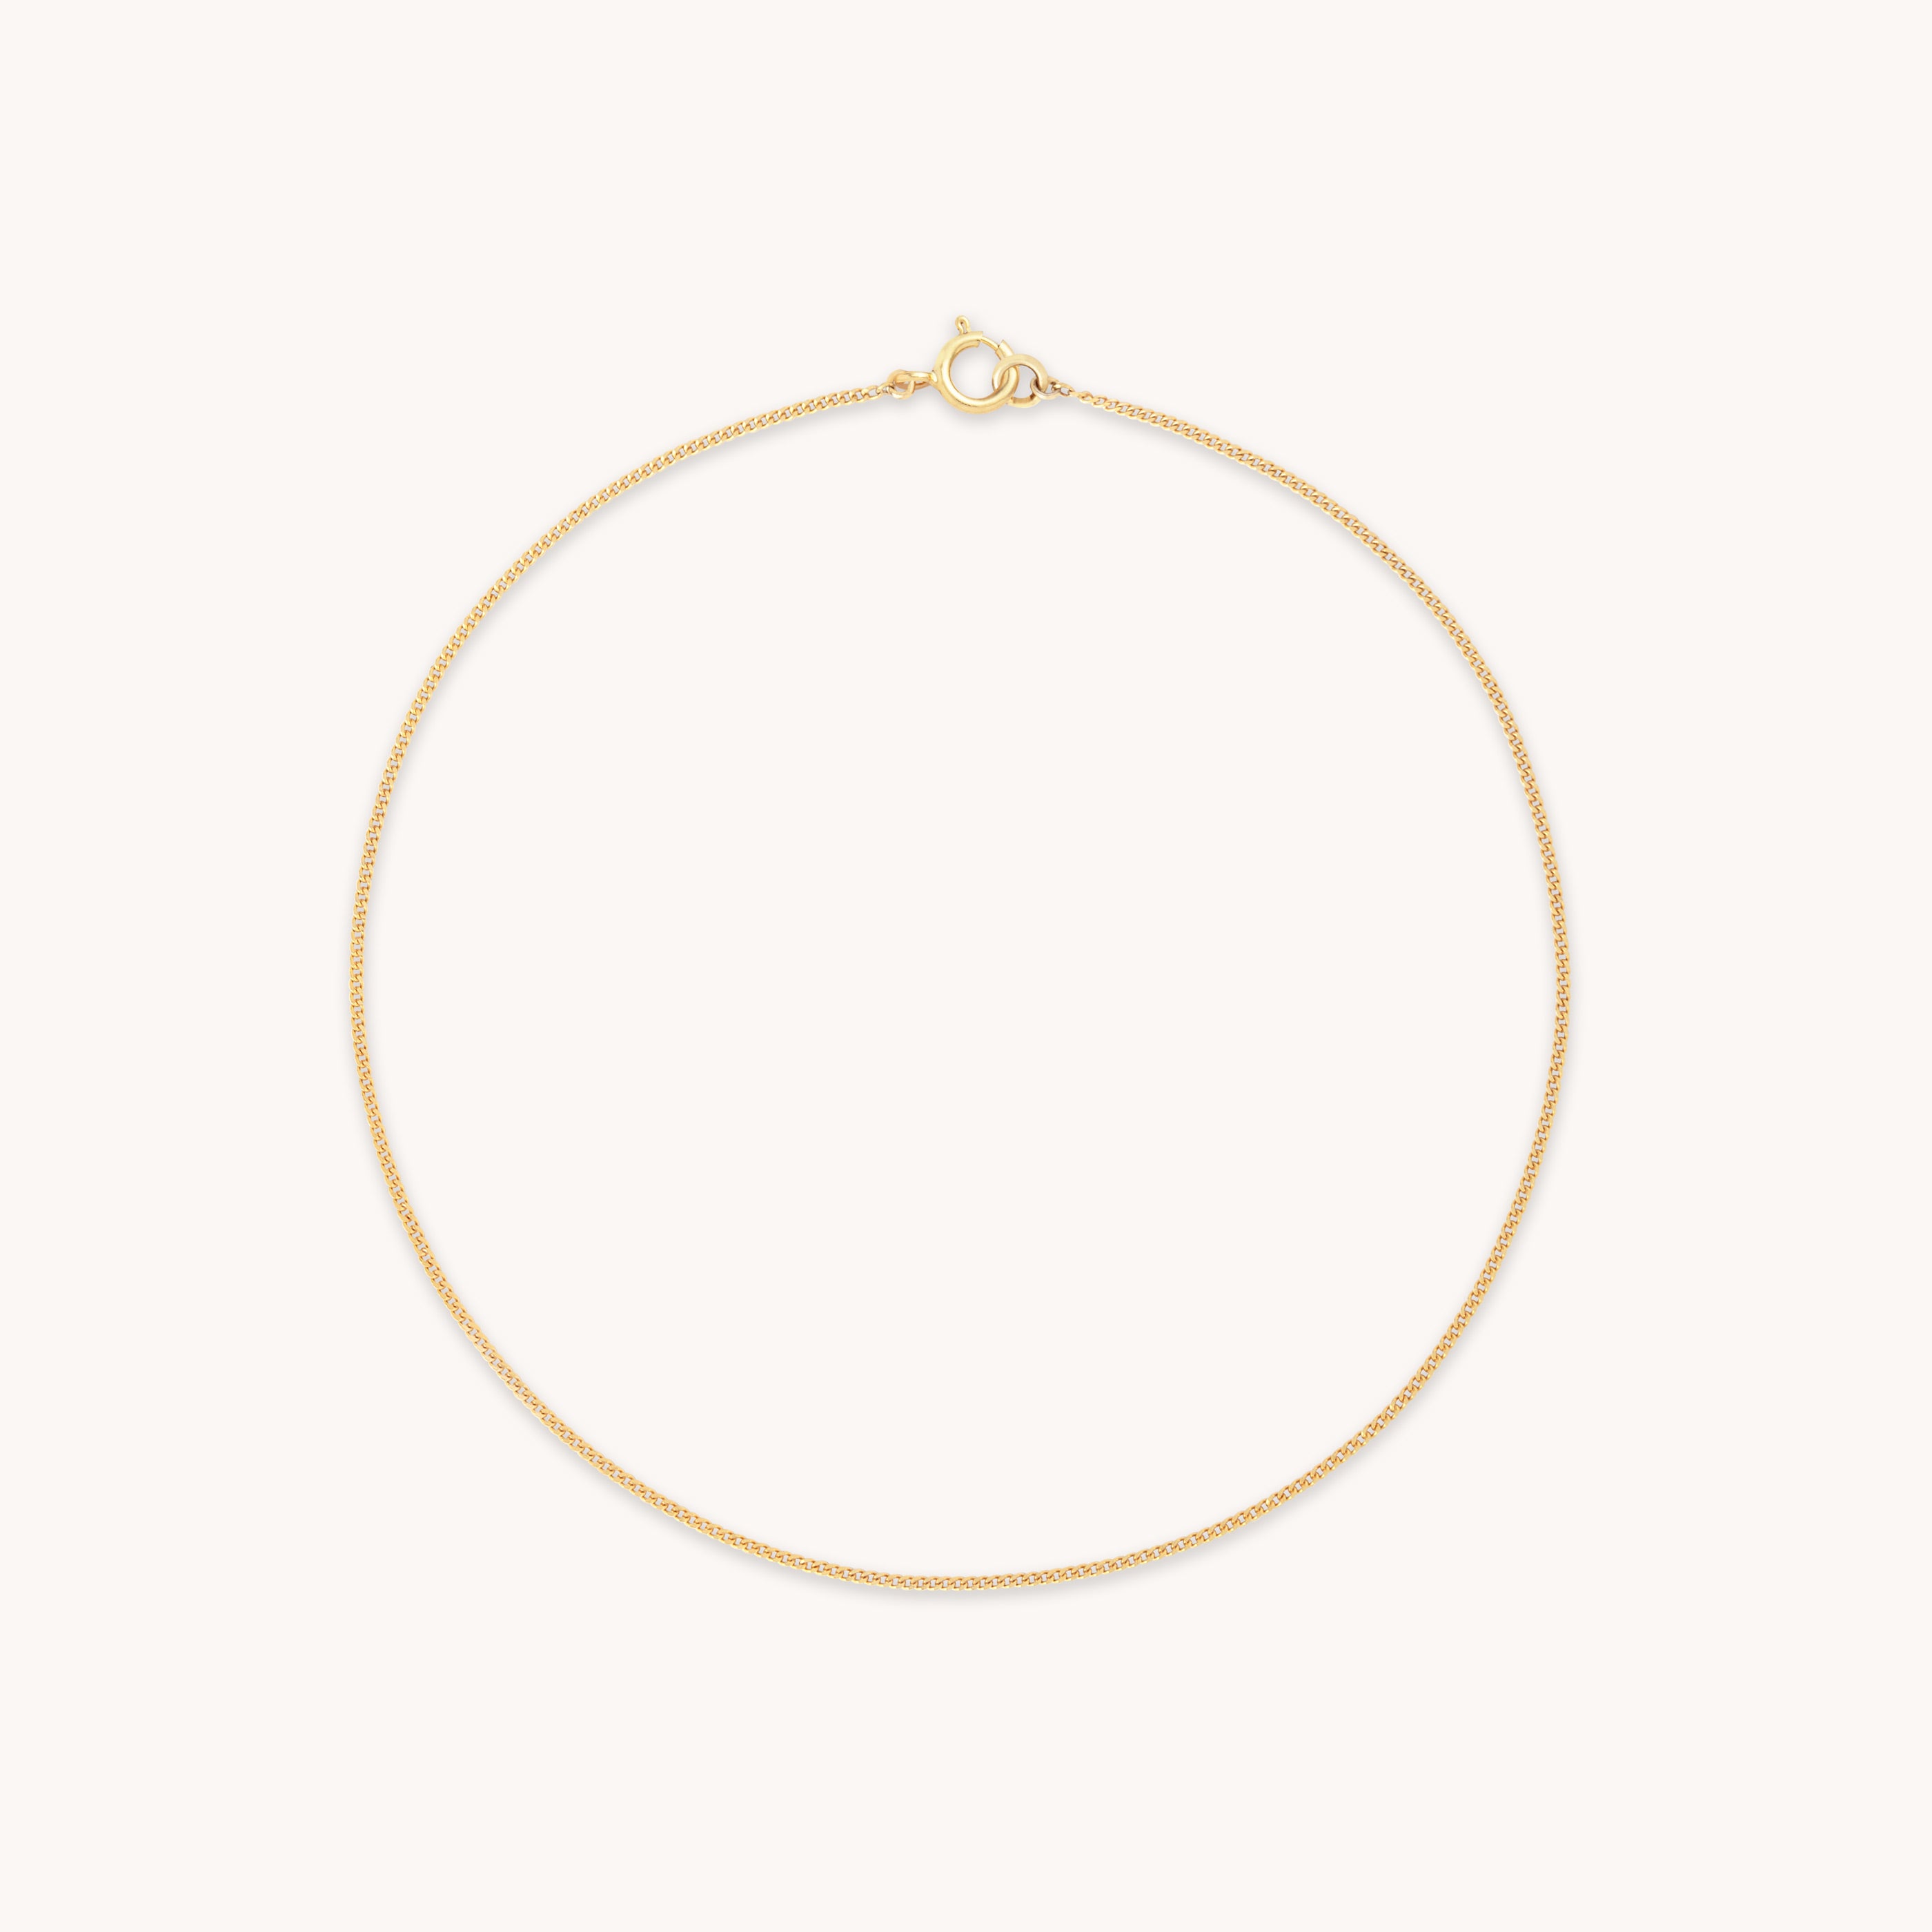 Miyu 9k Gold Chain Bracelet | Astrid & Miyu Bracelets